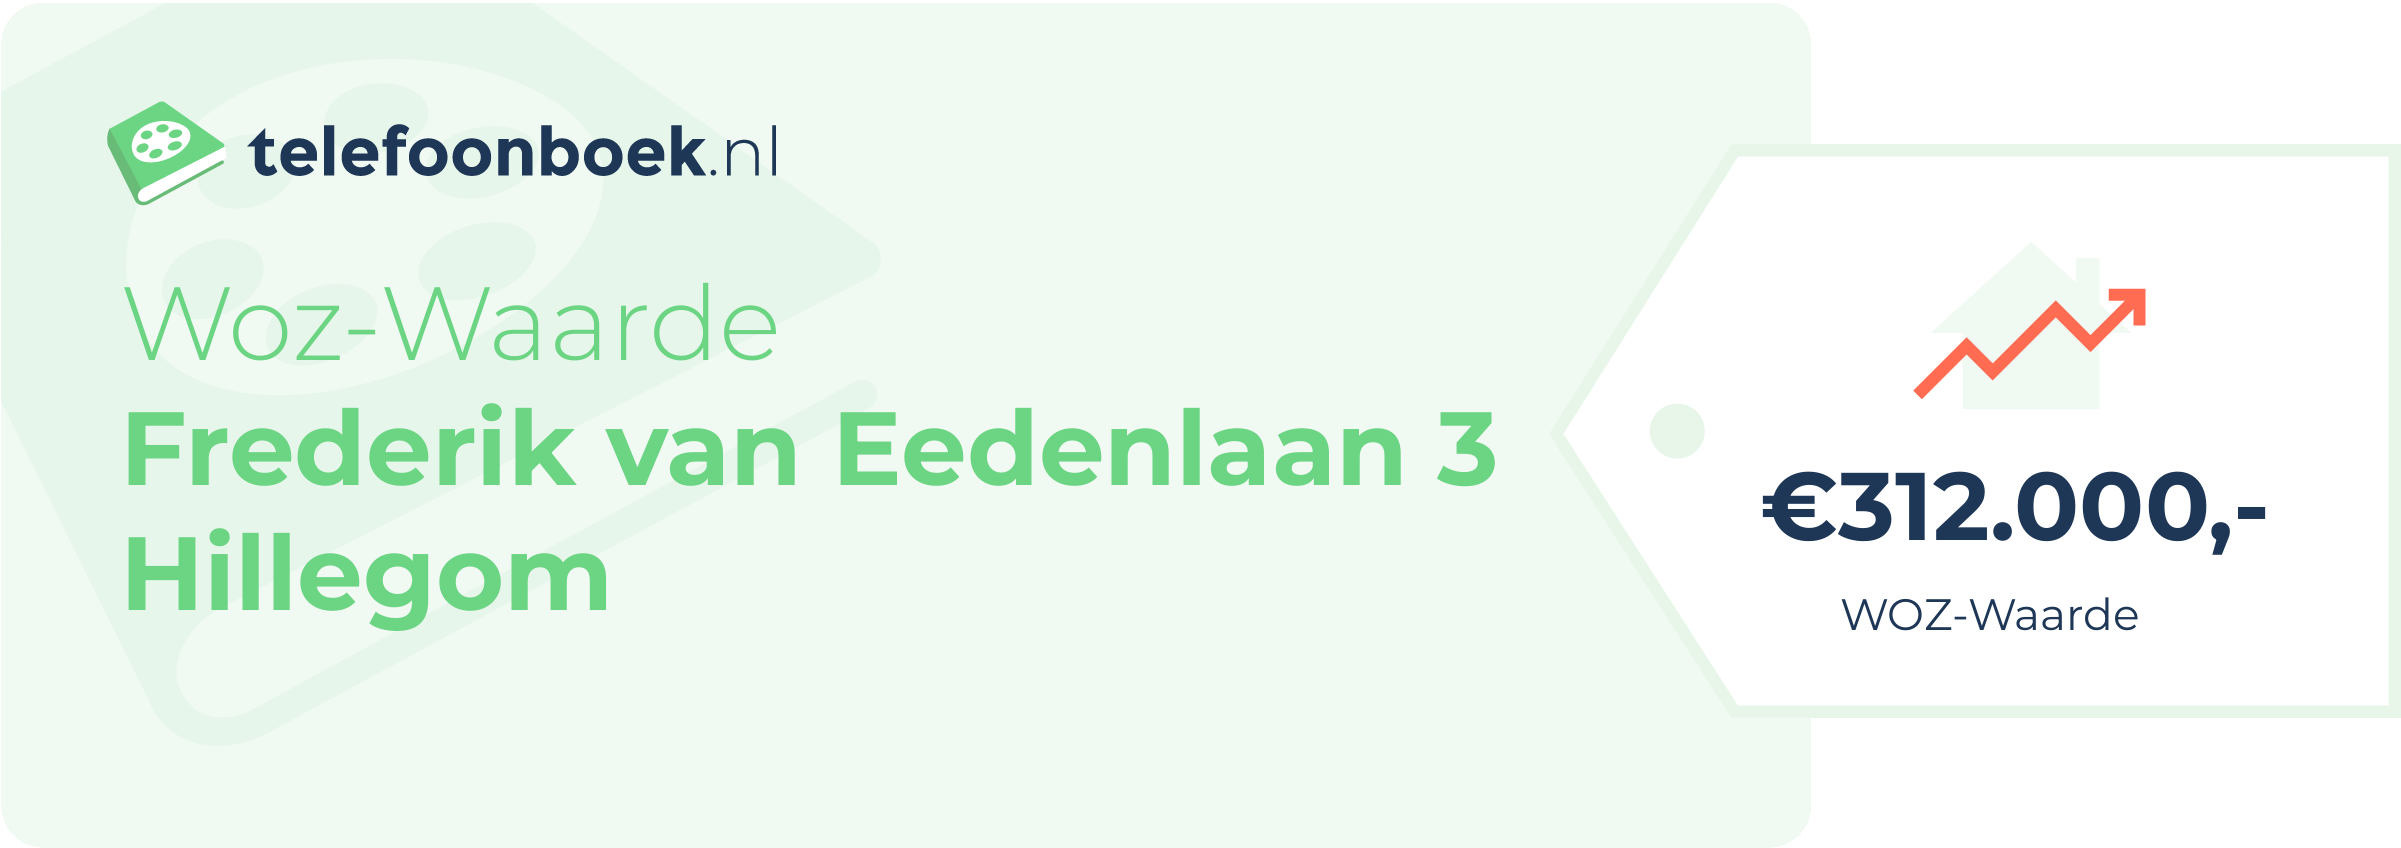 WOZ-waarde Frederik Van Eedenlaan 3 Hillegom